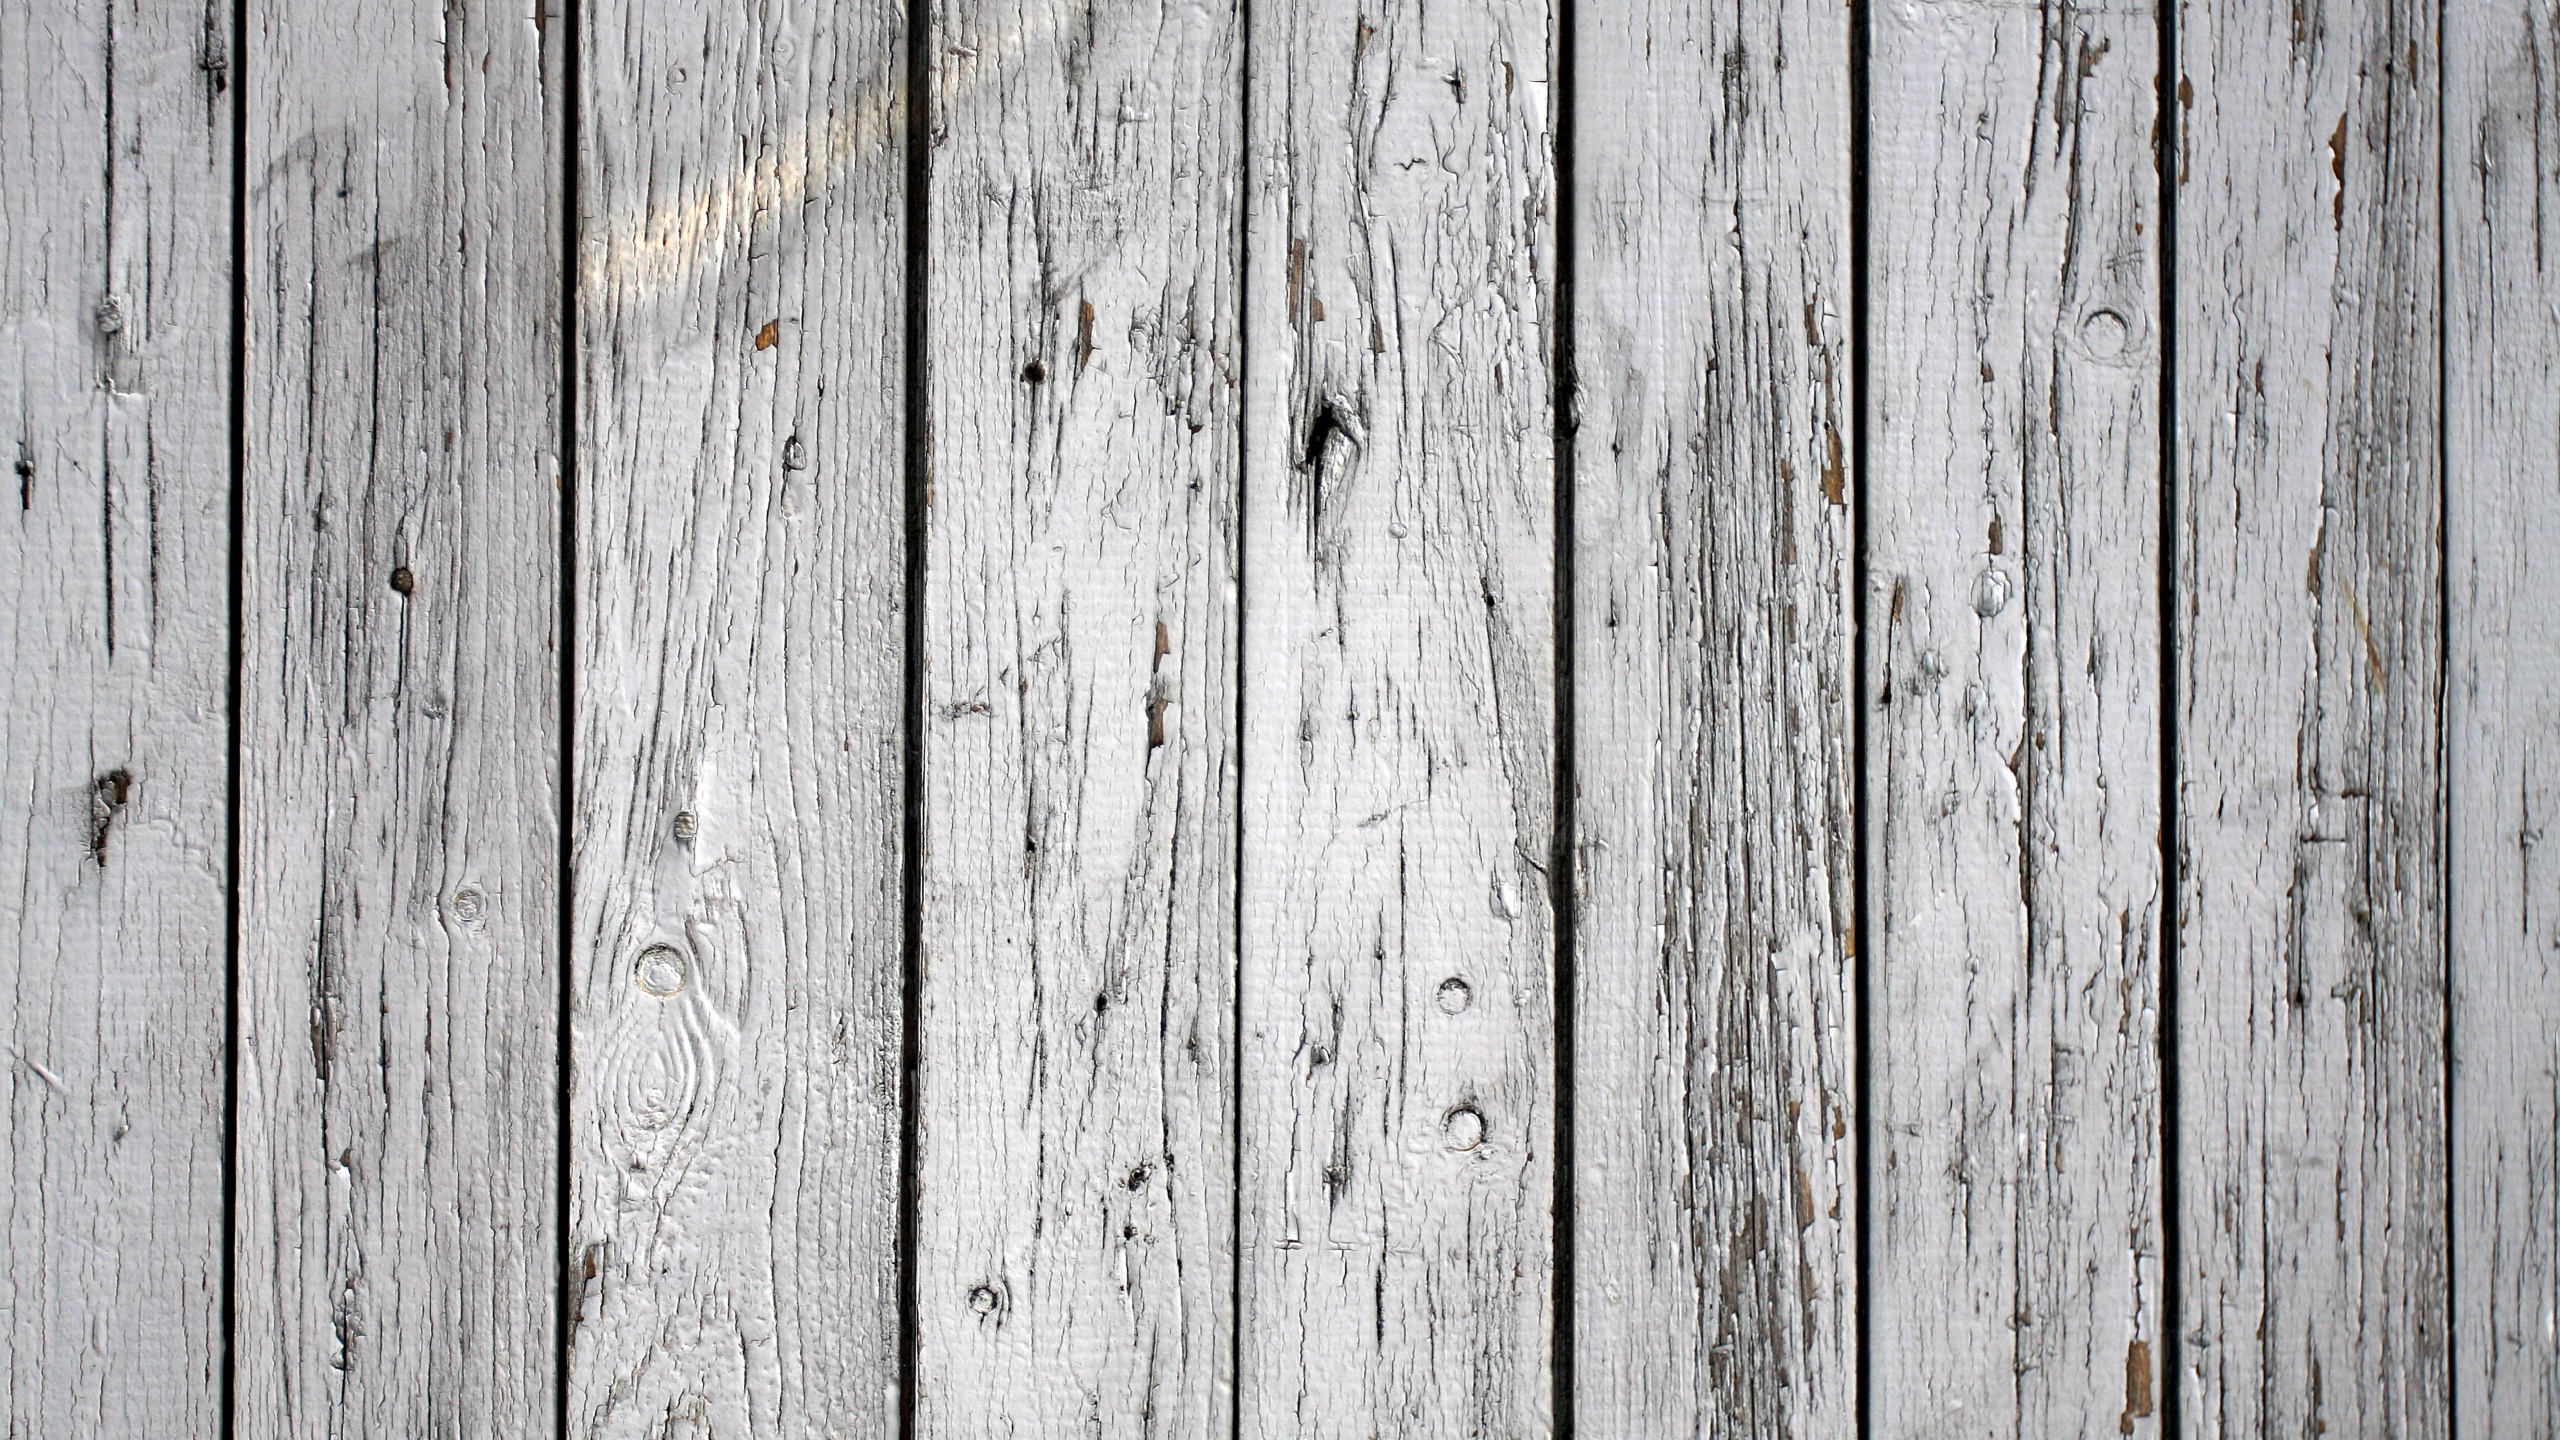 木, 木板, 木染色, 木材, 纹理 壁纸 2560x1440 允许